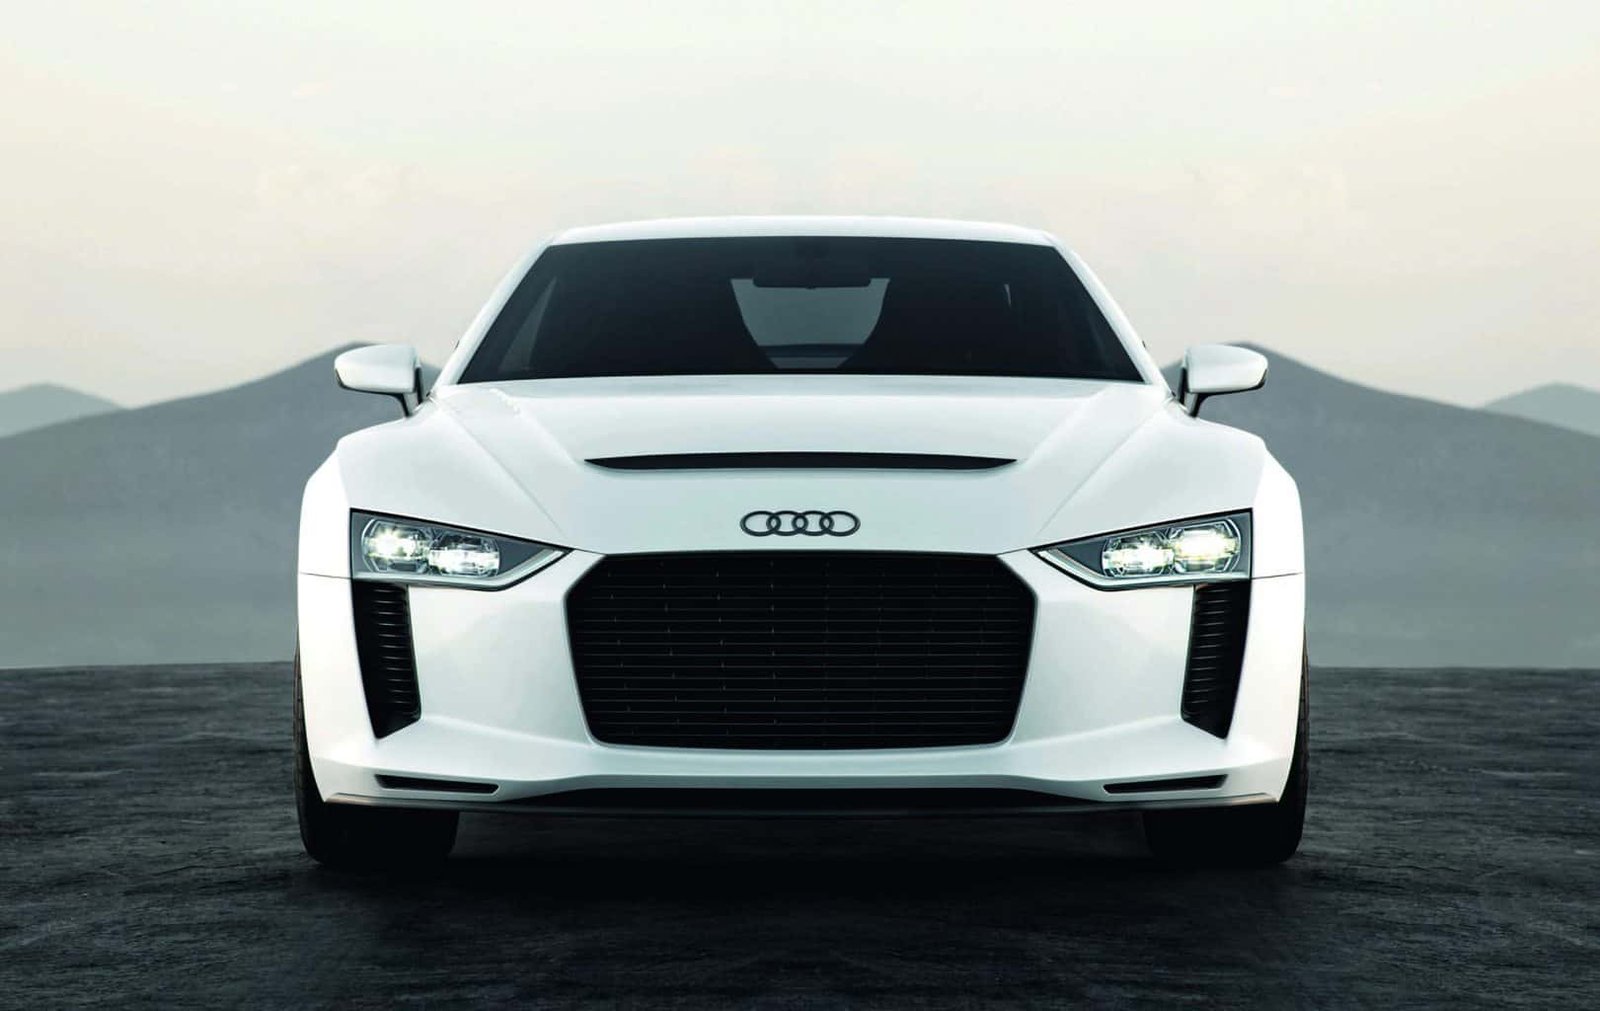 Paris Motor Show 2010: Audi quattro concept